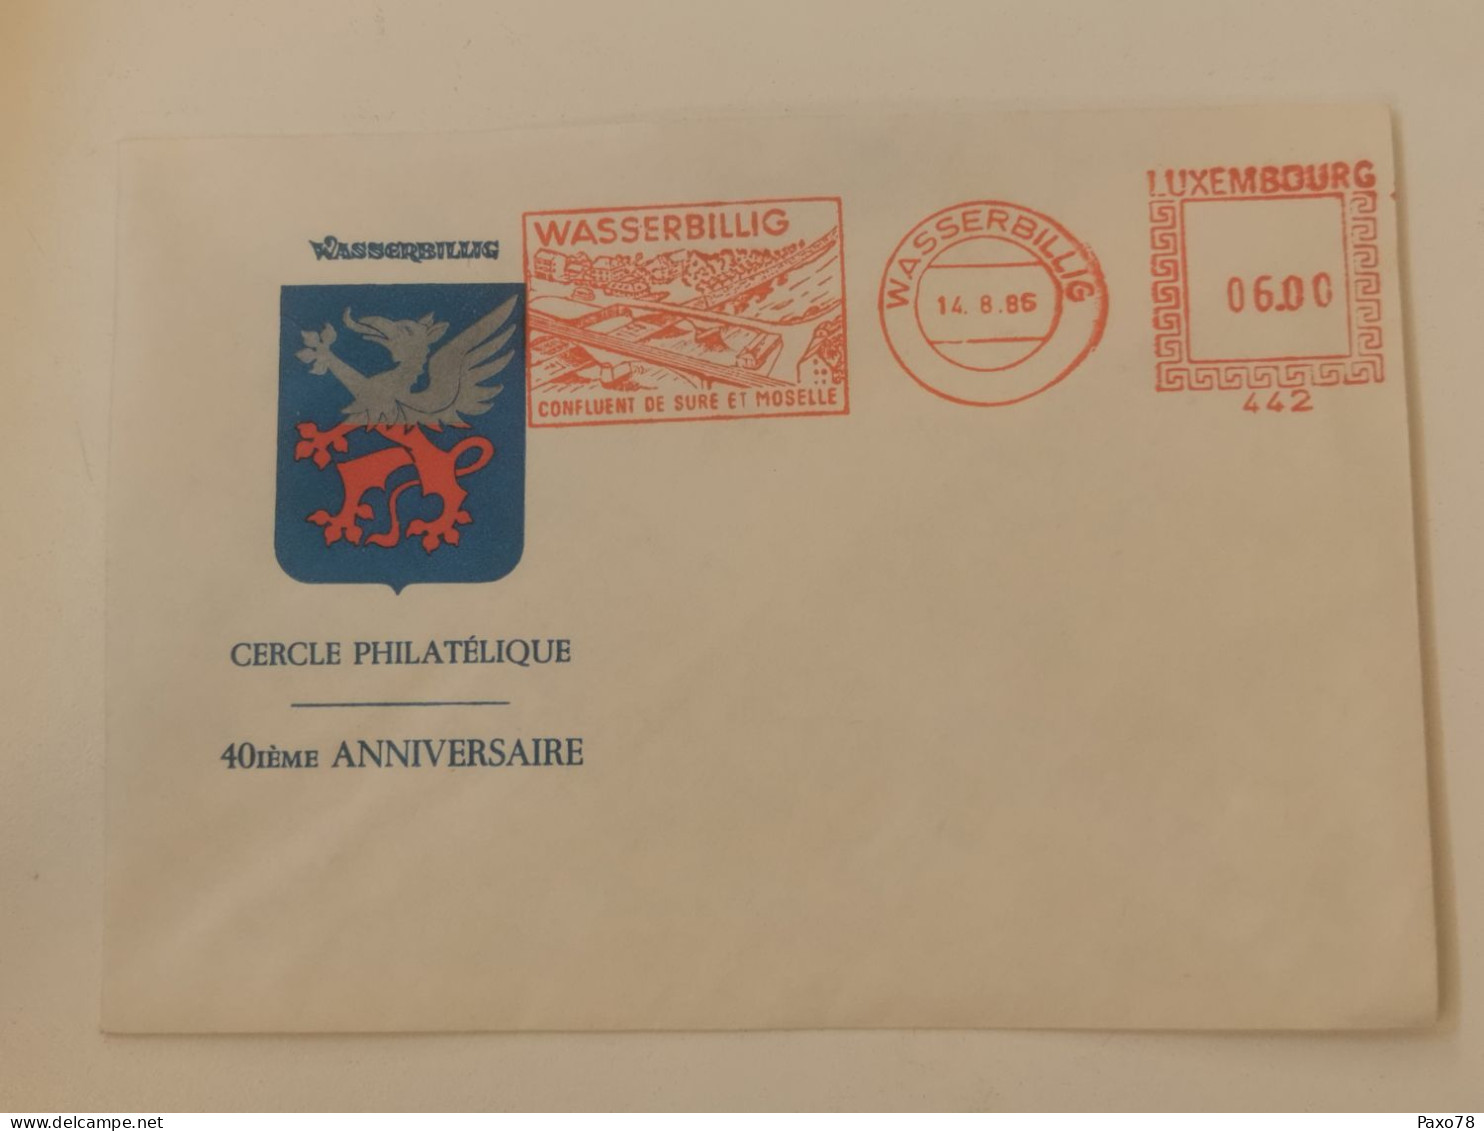 FDC, Wasserbillig, Cercle Philatélique 40e Anniversaire 1986 - FDC